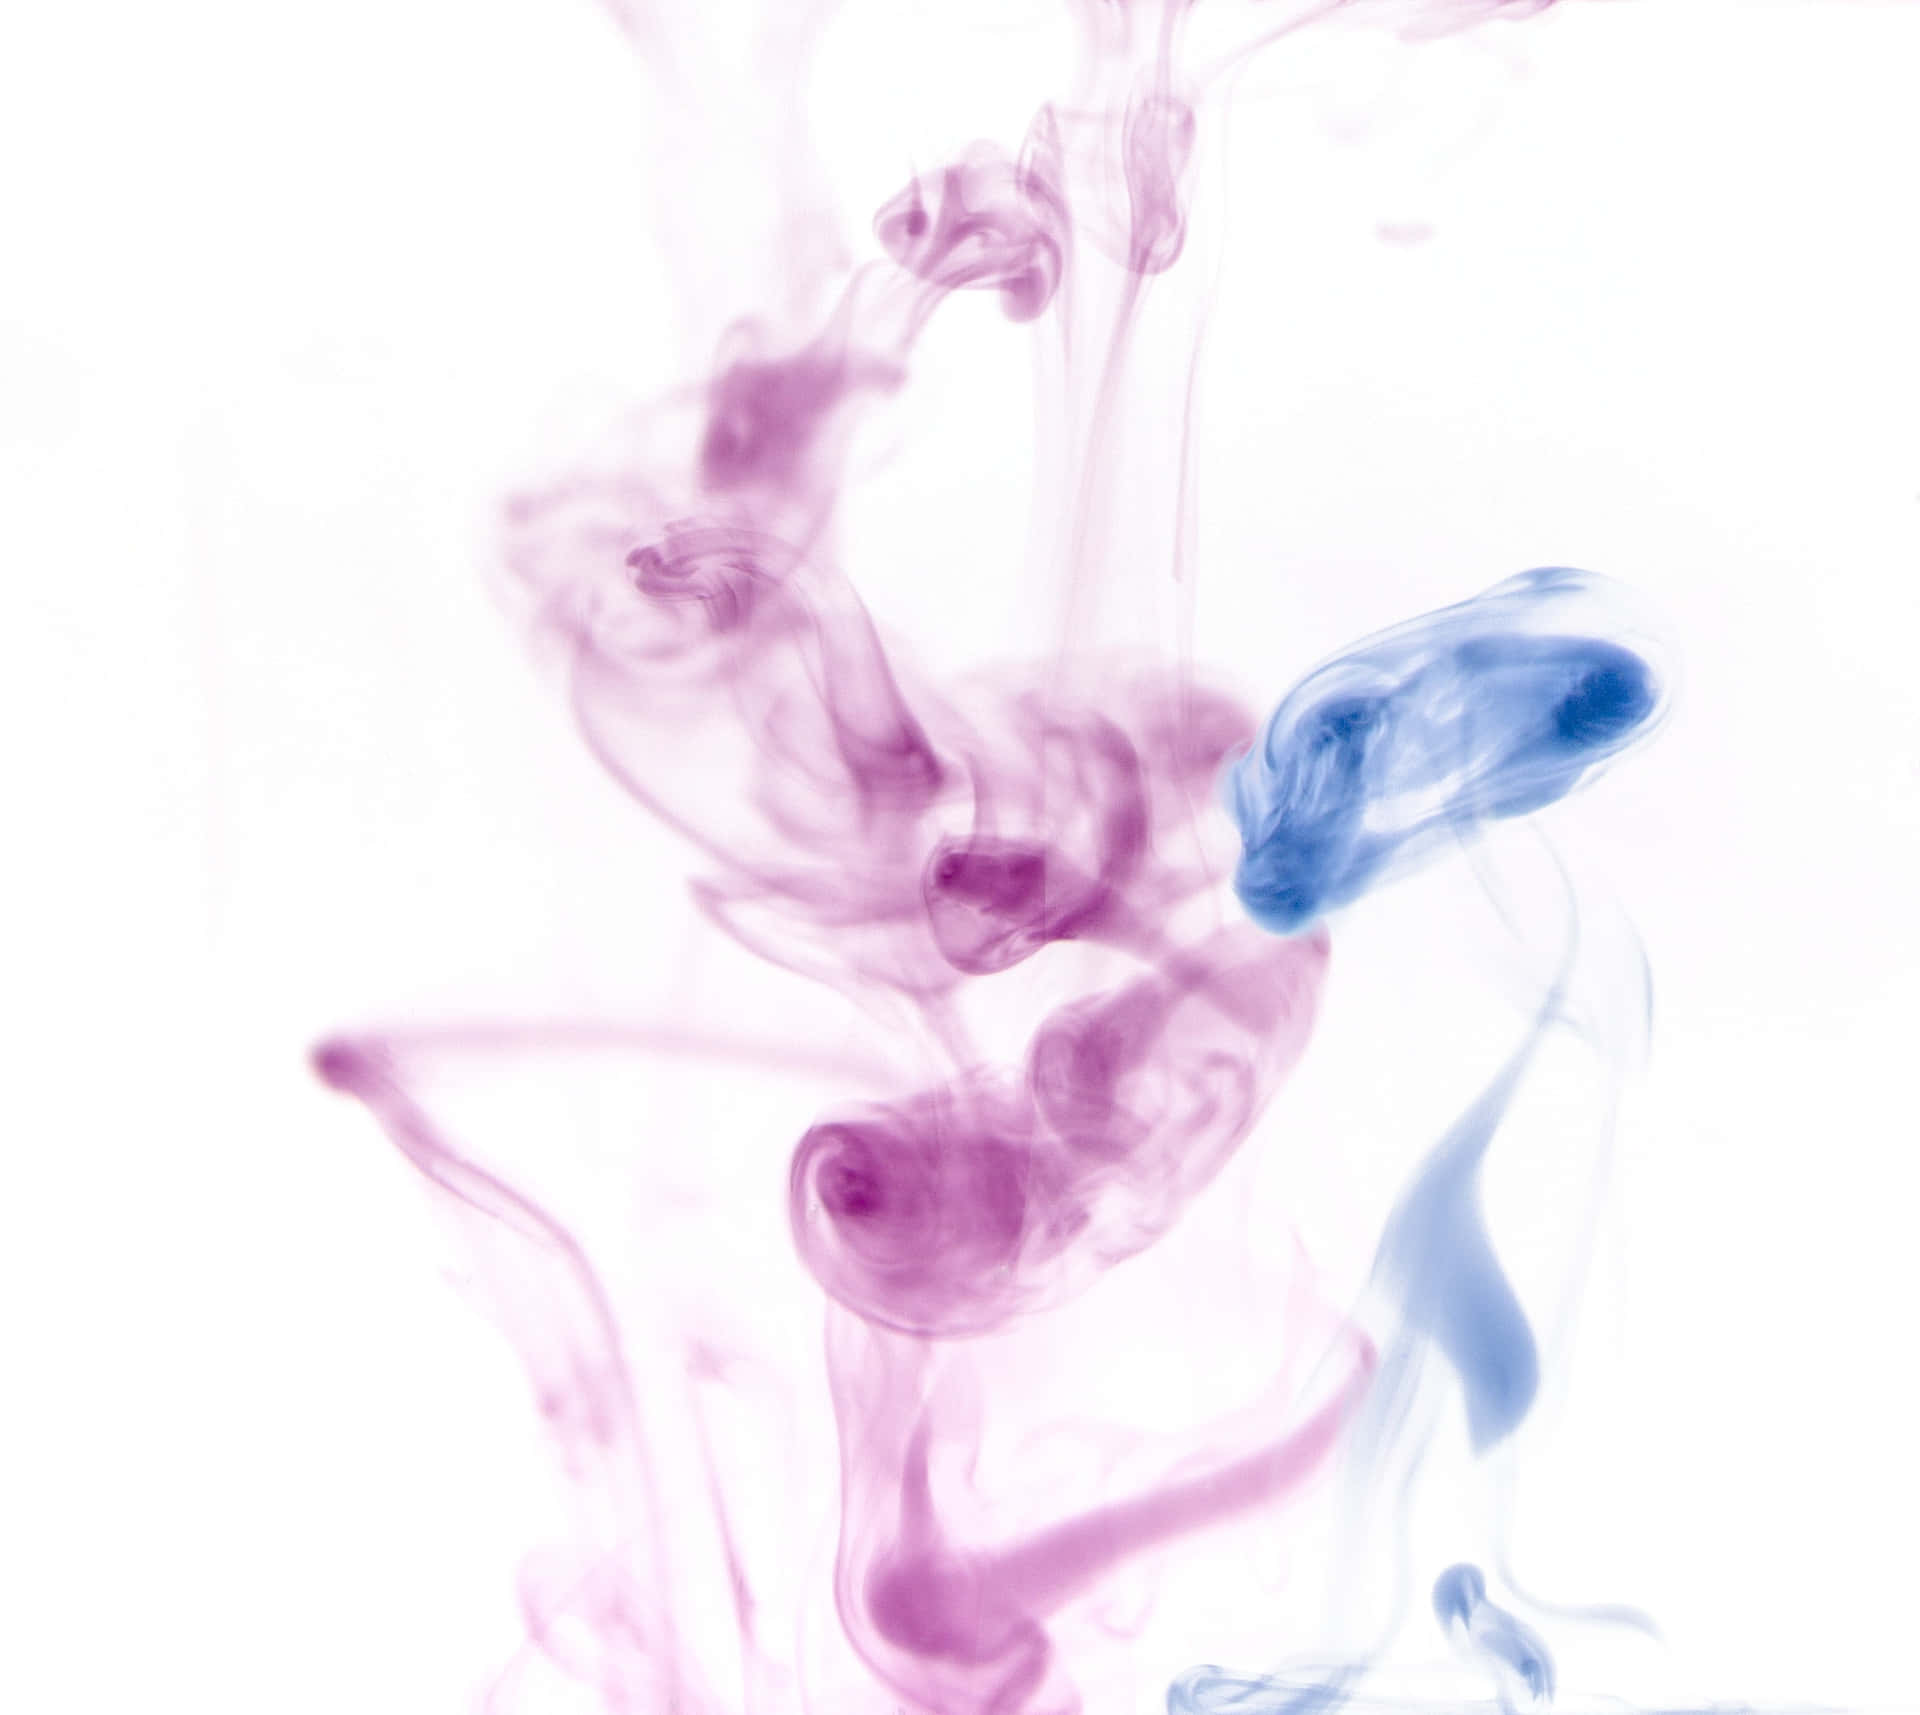 Fumoviola Vibrante - Un Soggetto Fotografico Colorato E Misterioso